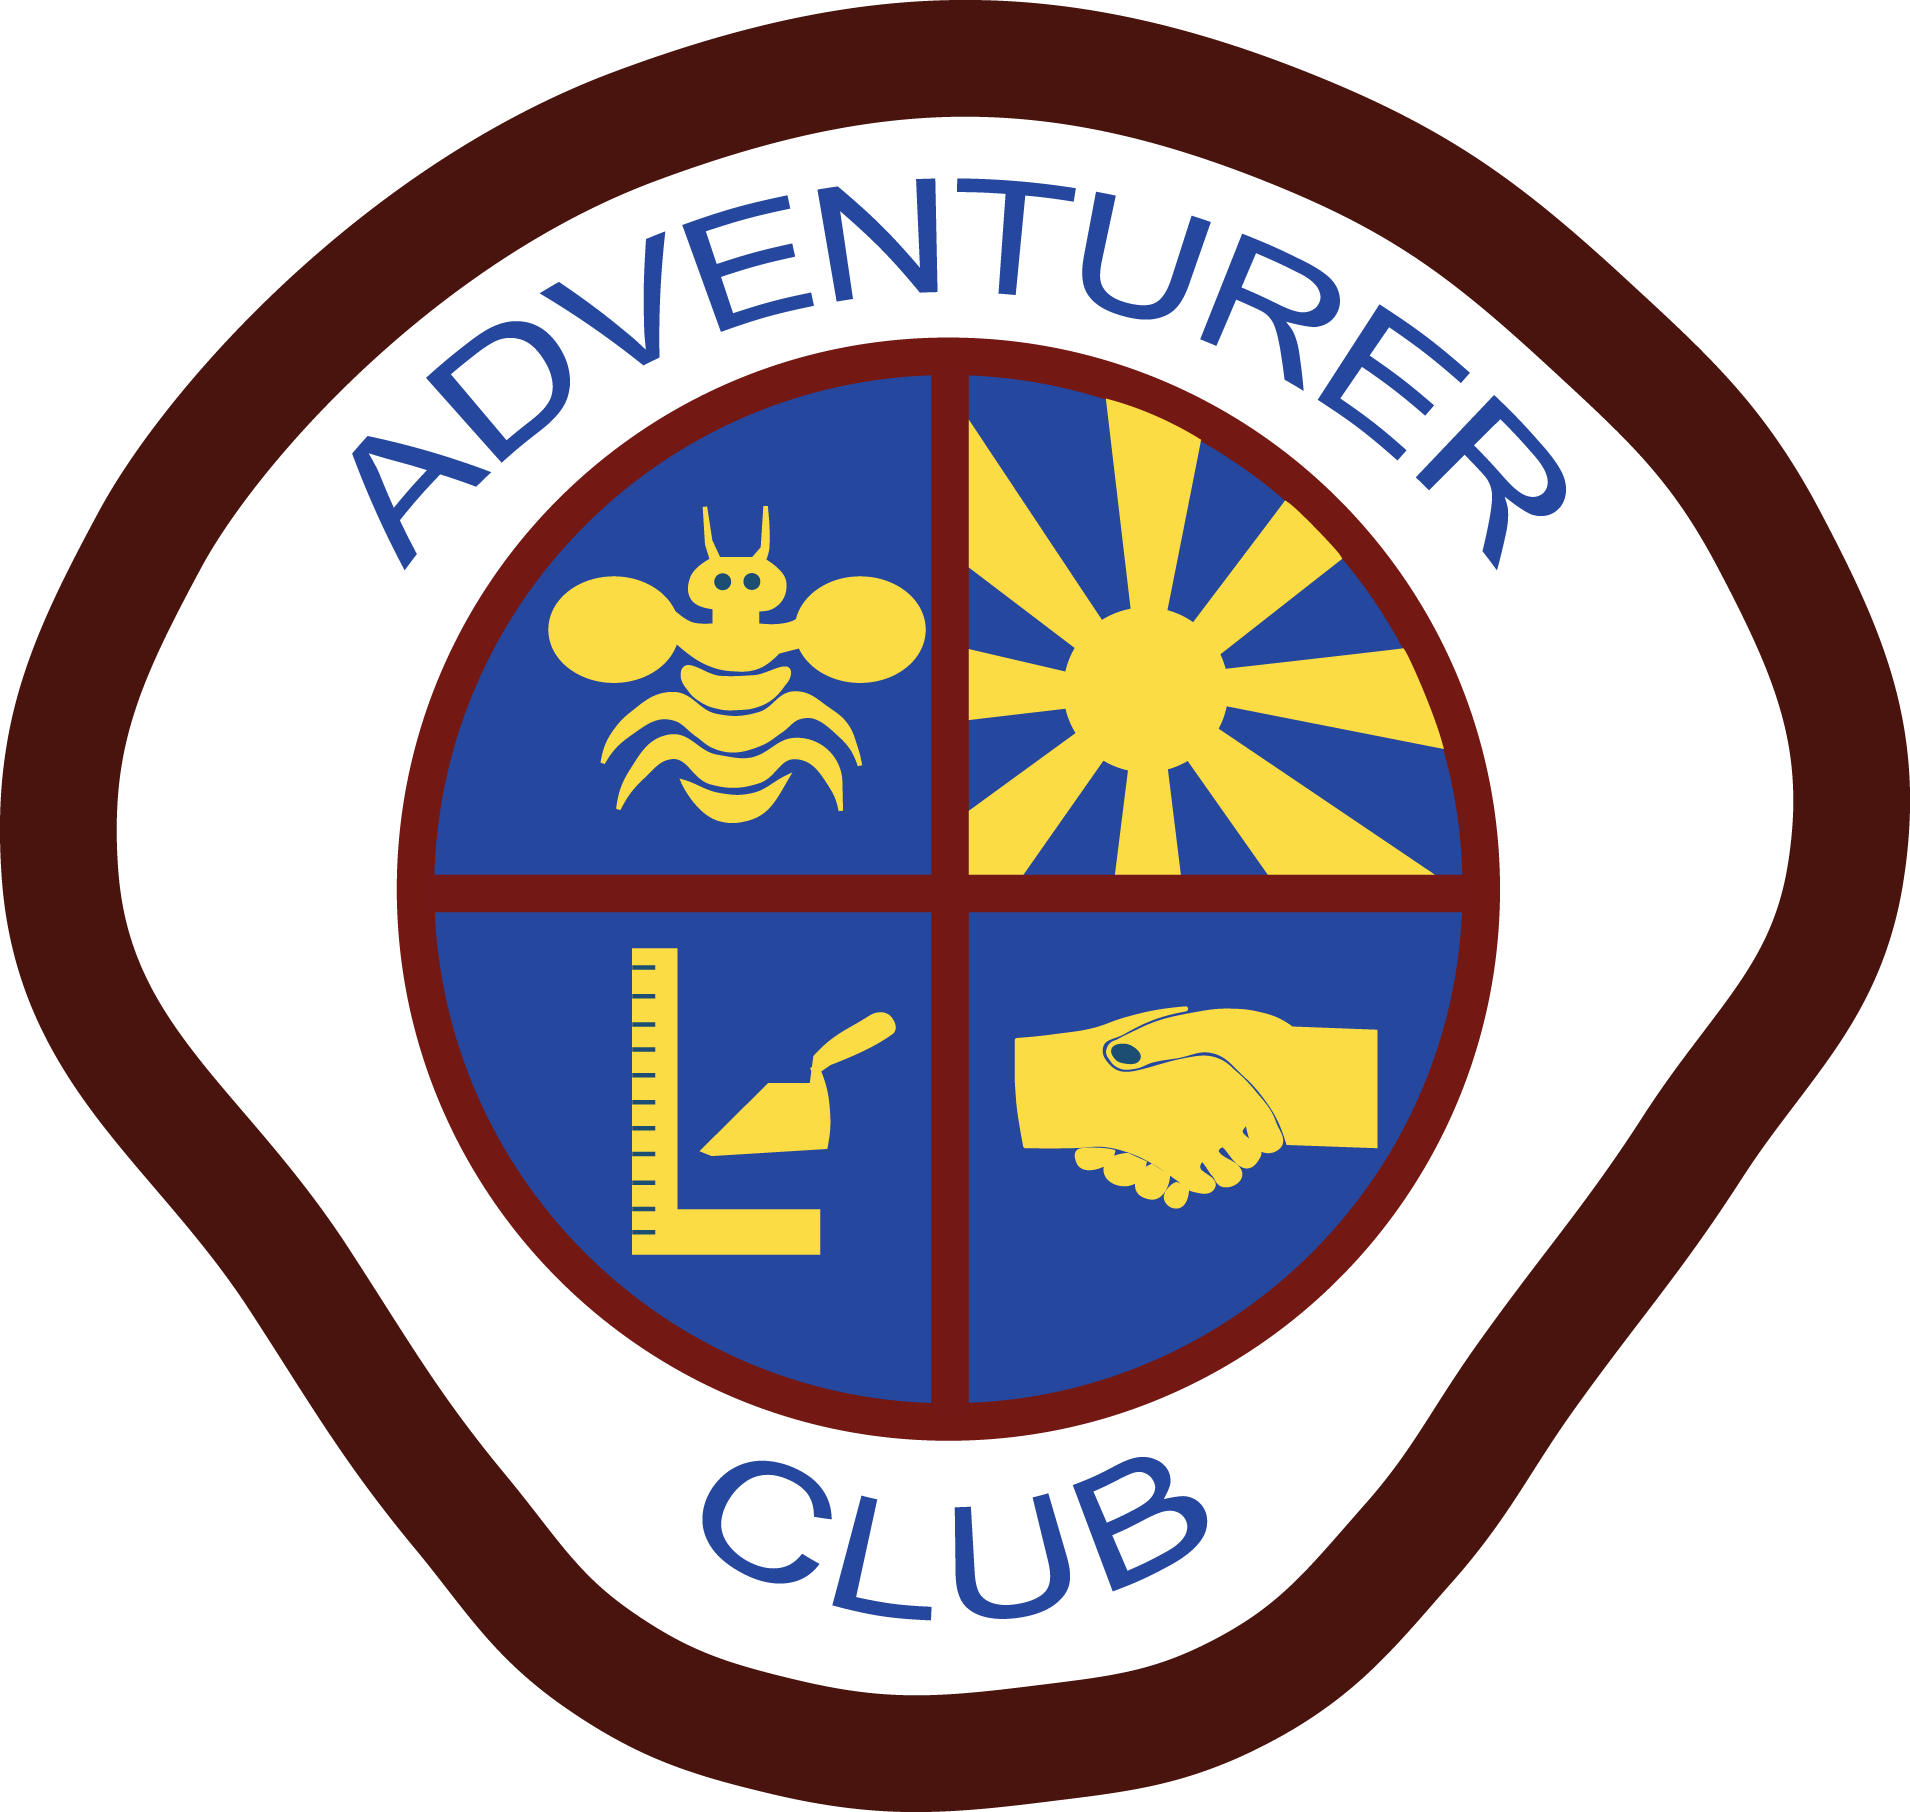 Adventurer Logo - Seventh Day Adventist Adventurer Club (1910x1812), Png Download